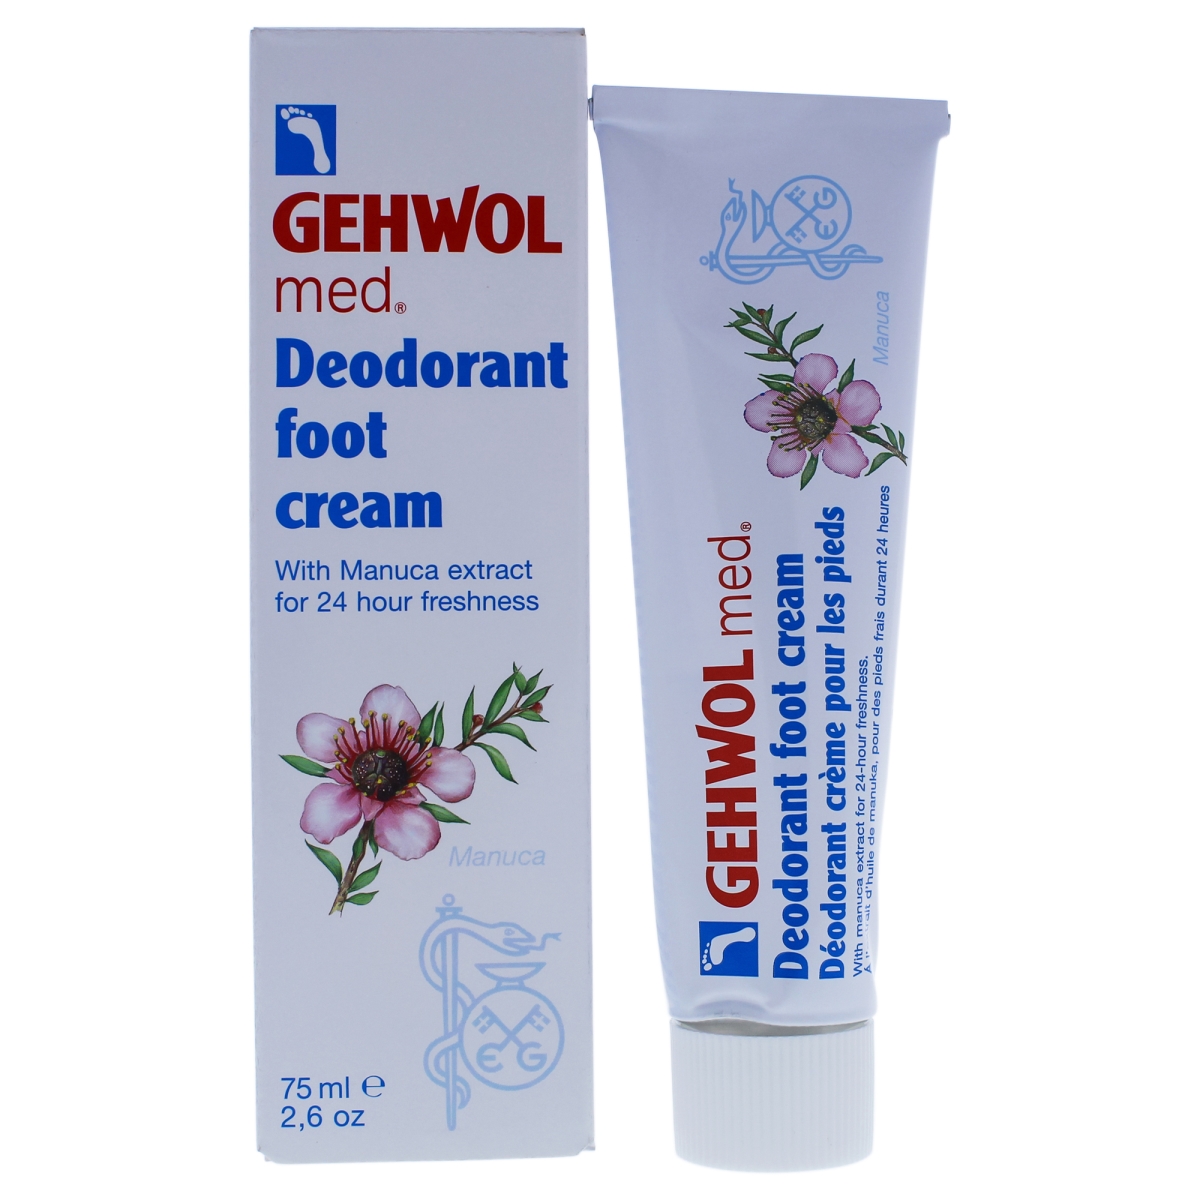 I0091988 Med Deodorant Foot Cream For Unisex - 2.6 Oz